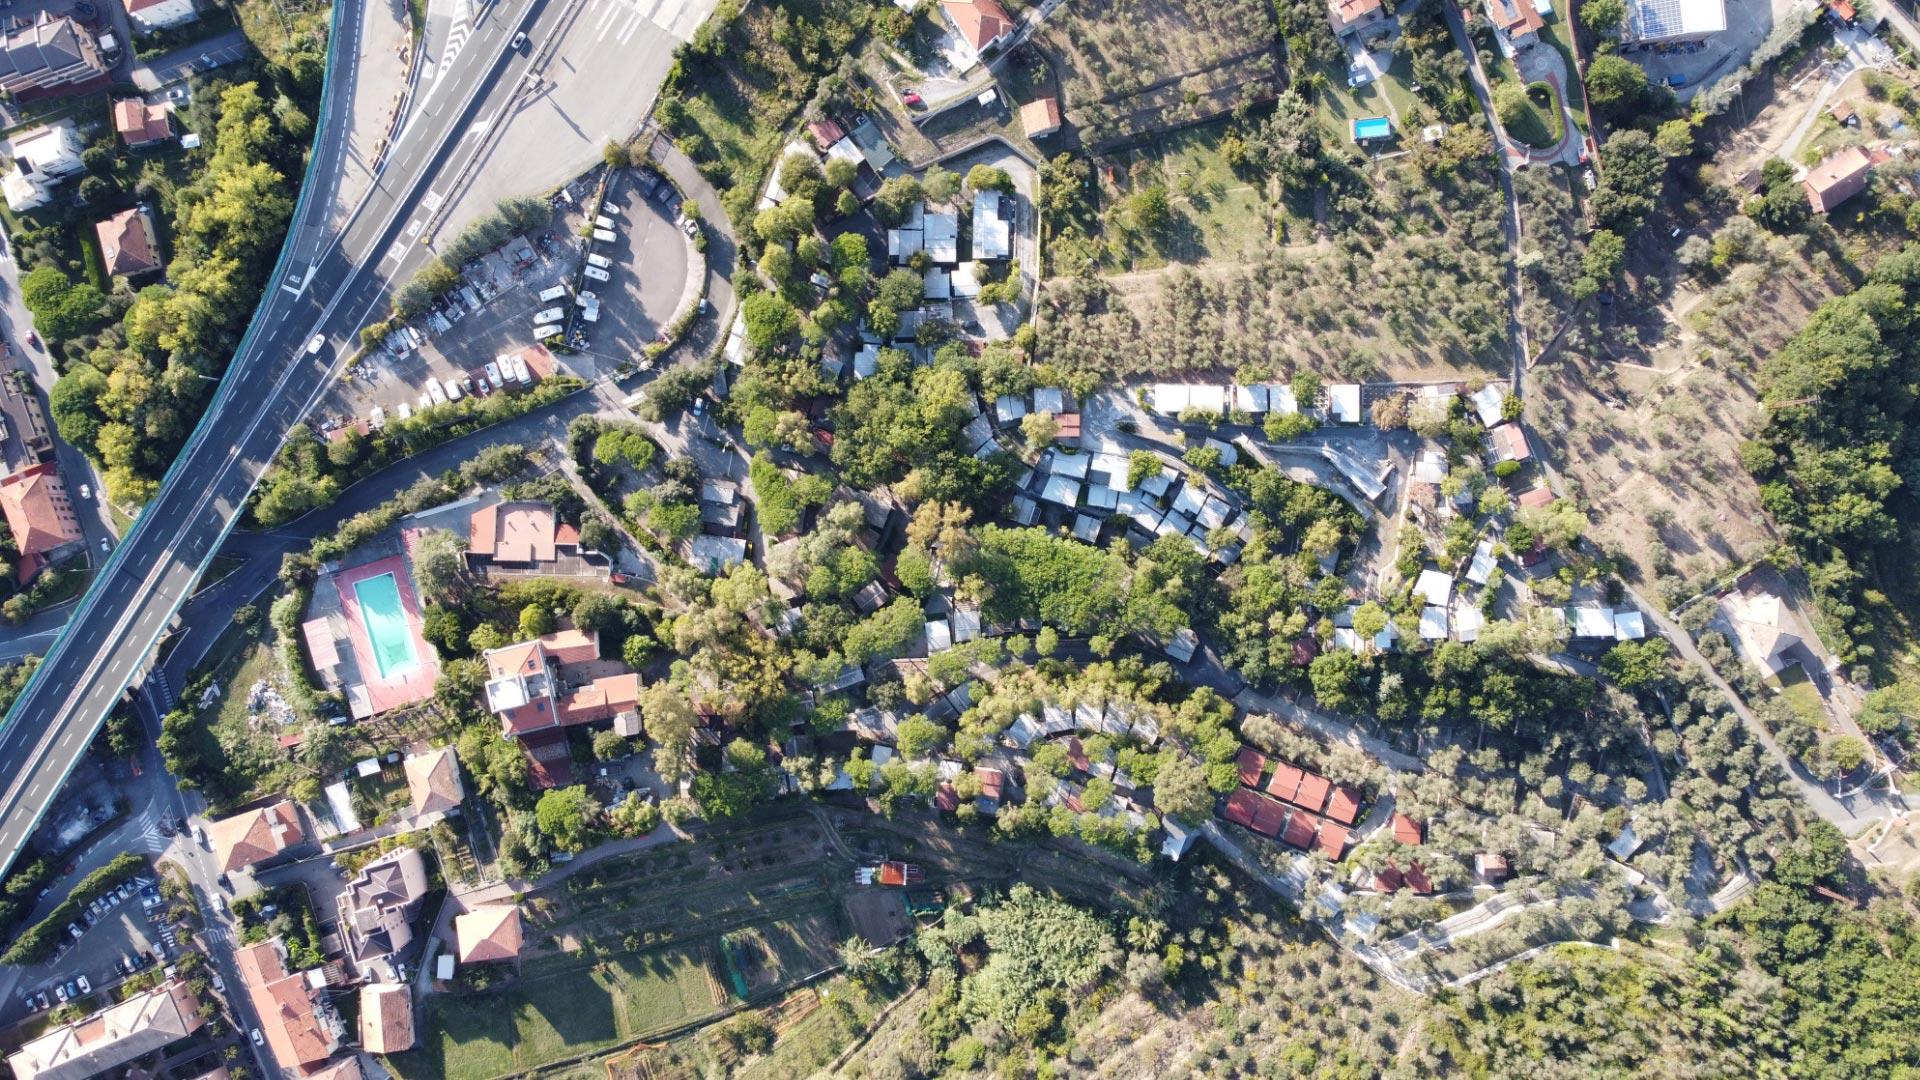 Vista aerea di una zona residenziale con piscina e strade.